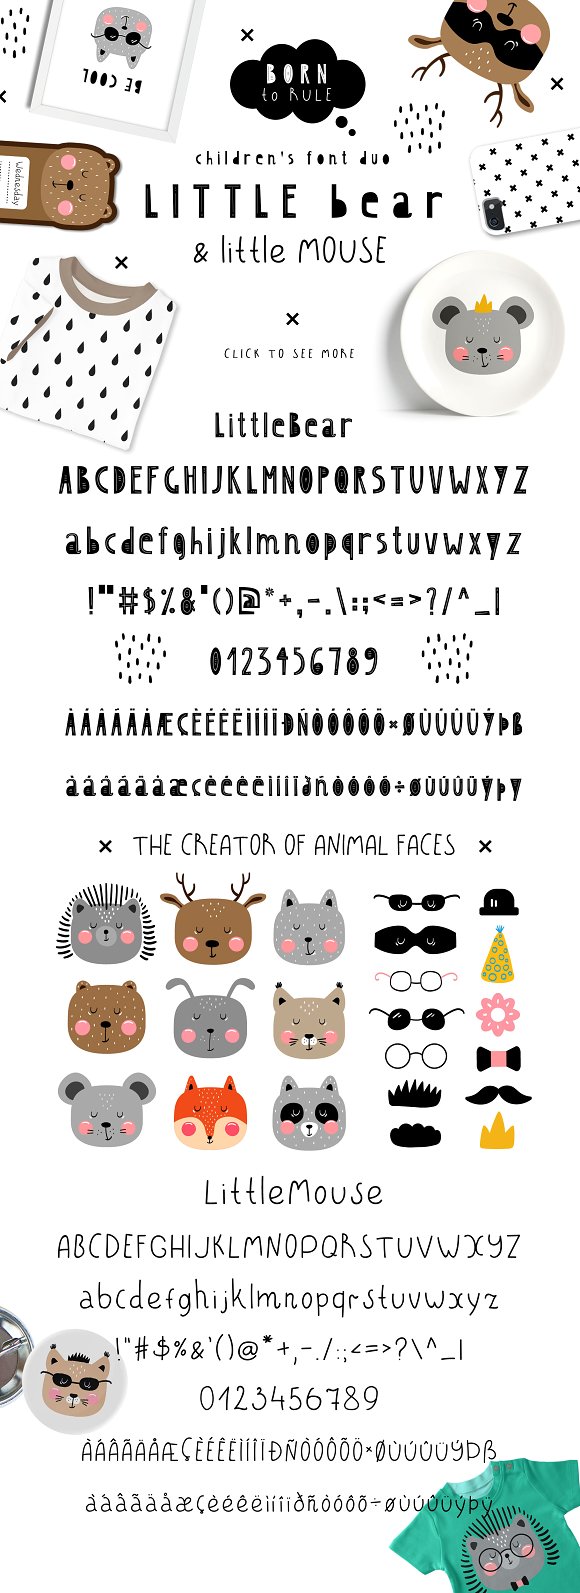 LittleBear & LittleMouse – Font Duo插图